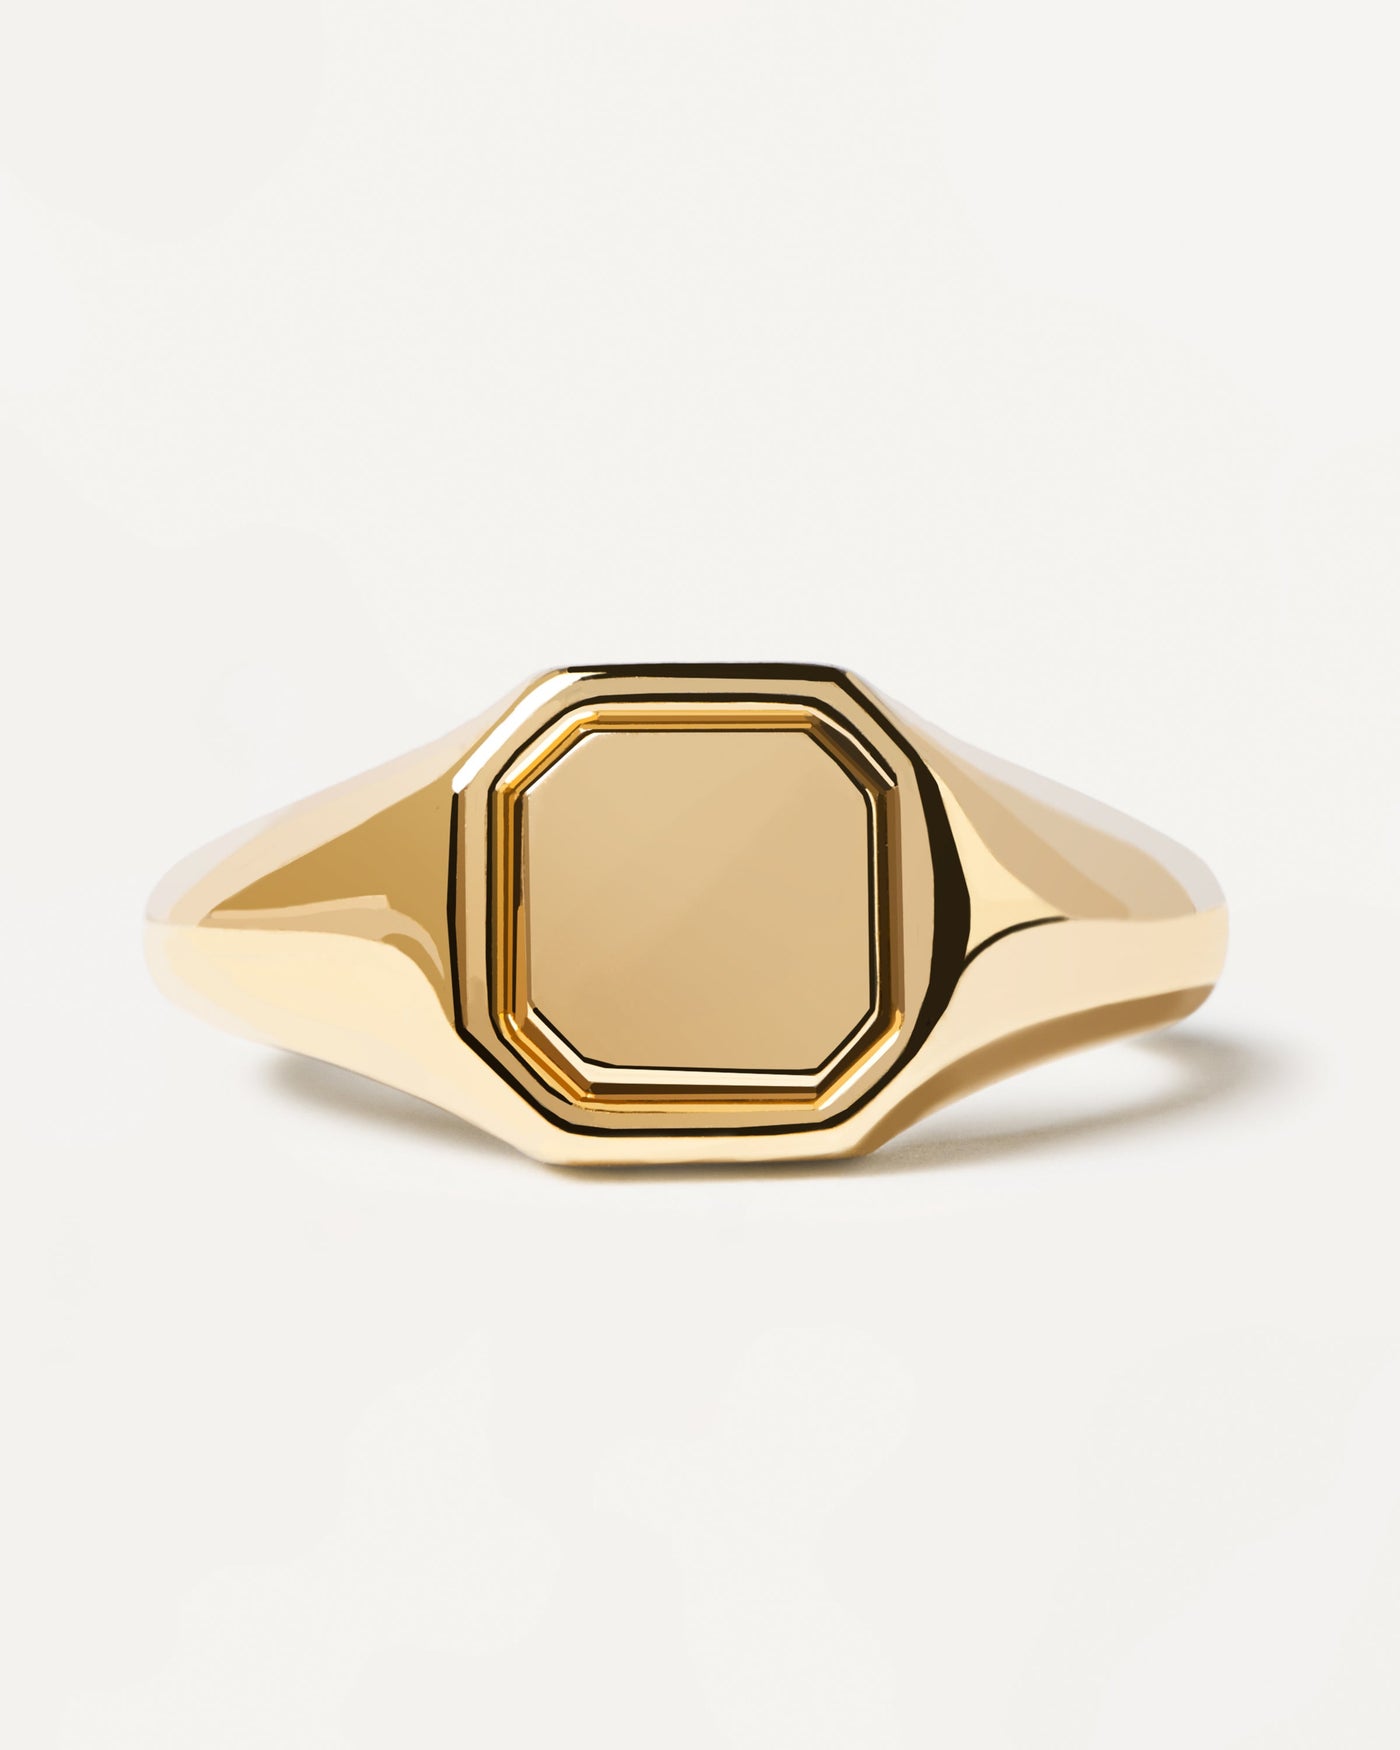 Octet Siegel Ring. Gravierbarer, achteckiger Siegelring aus vergoldetem Silber. Erhalten Sie die neuesten Produkte von PDPAOLA. Geben Sie Ihre Bestellung sicher auf und erhalten Sie diesen Bestseller.